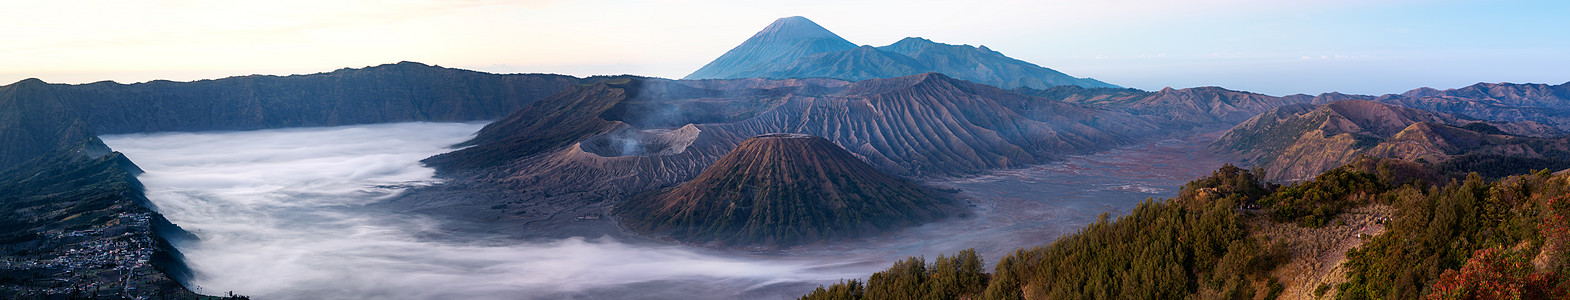 布罗莫火山的日出 在印度爪哇喷射公园冒险蓝色小径山脉薄雾环境旅游吸引力地平线图片